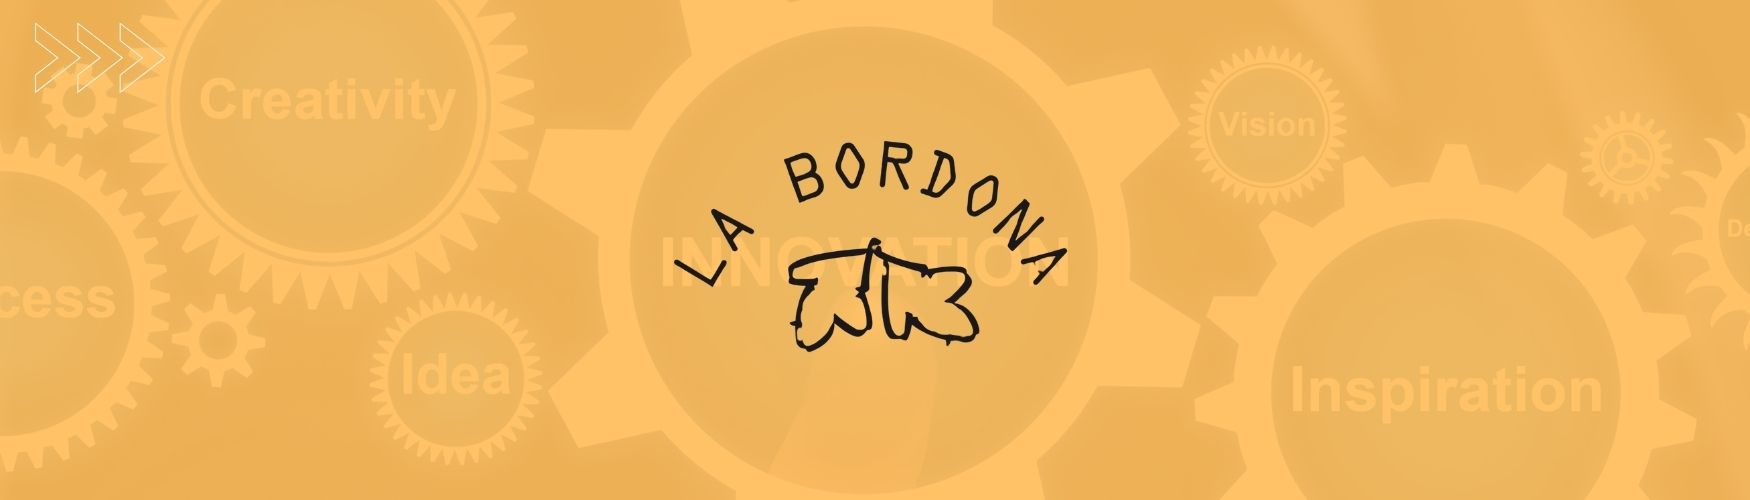 La Bordona